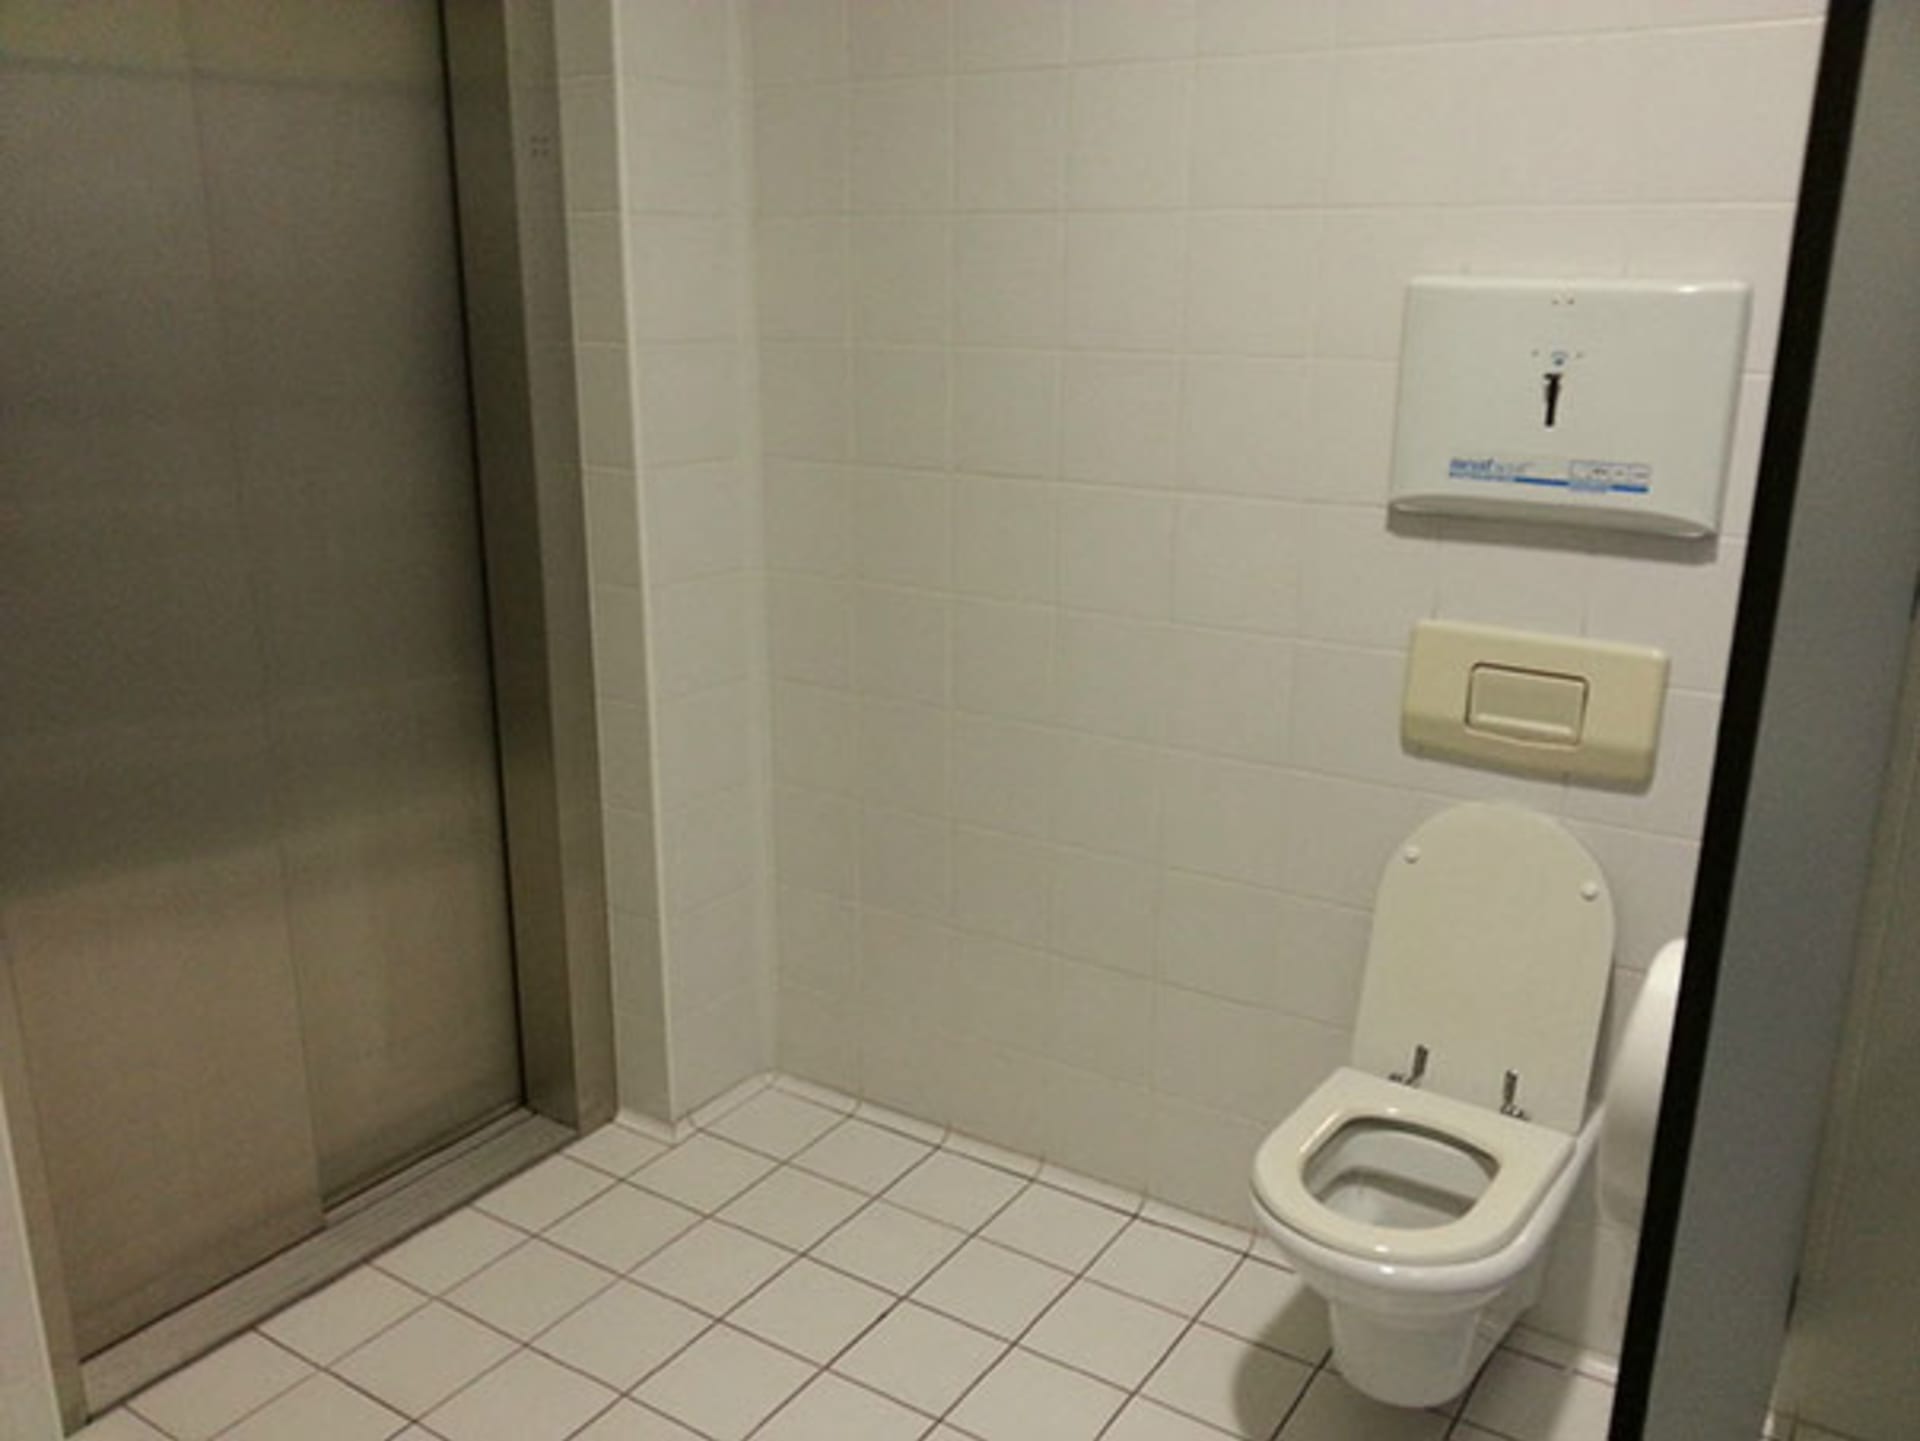 Když na záchodě najdete výtah